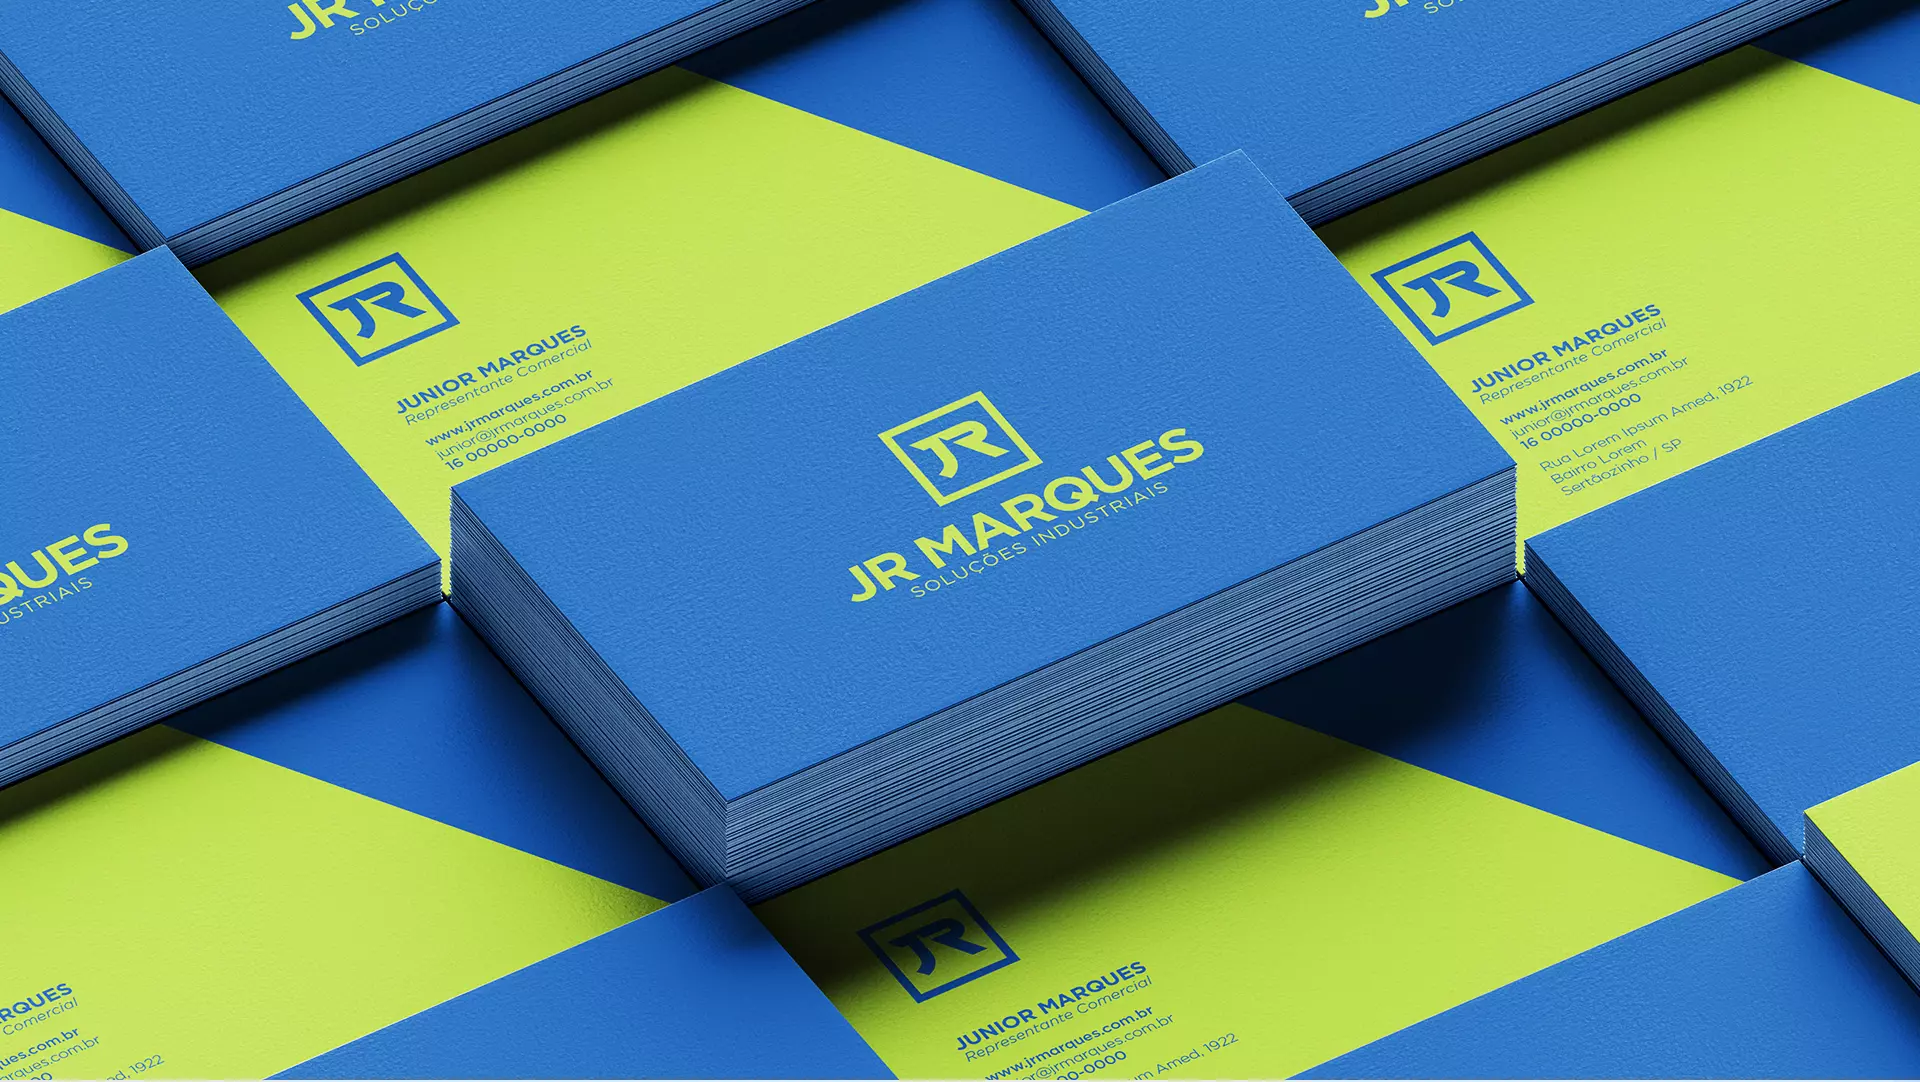 JR Marques - Soluções Industriais | Identidade Visual